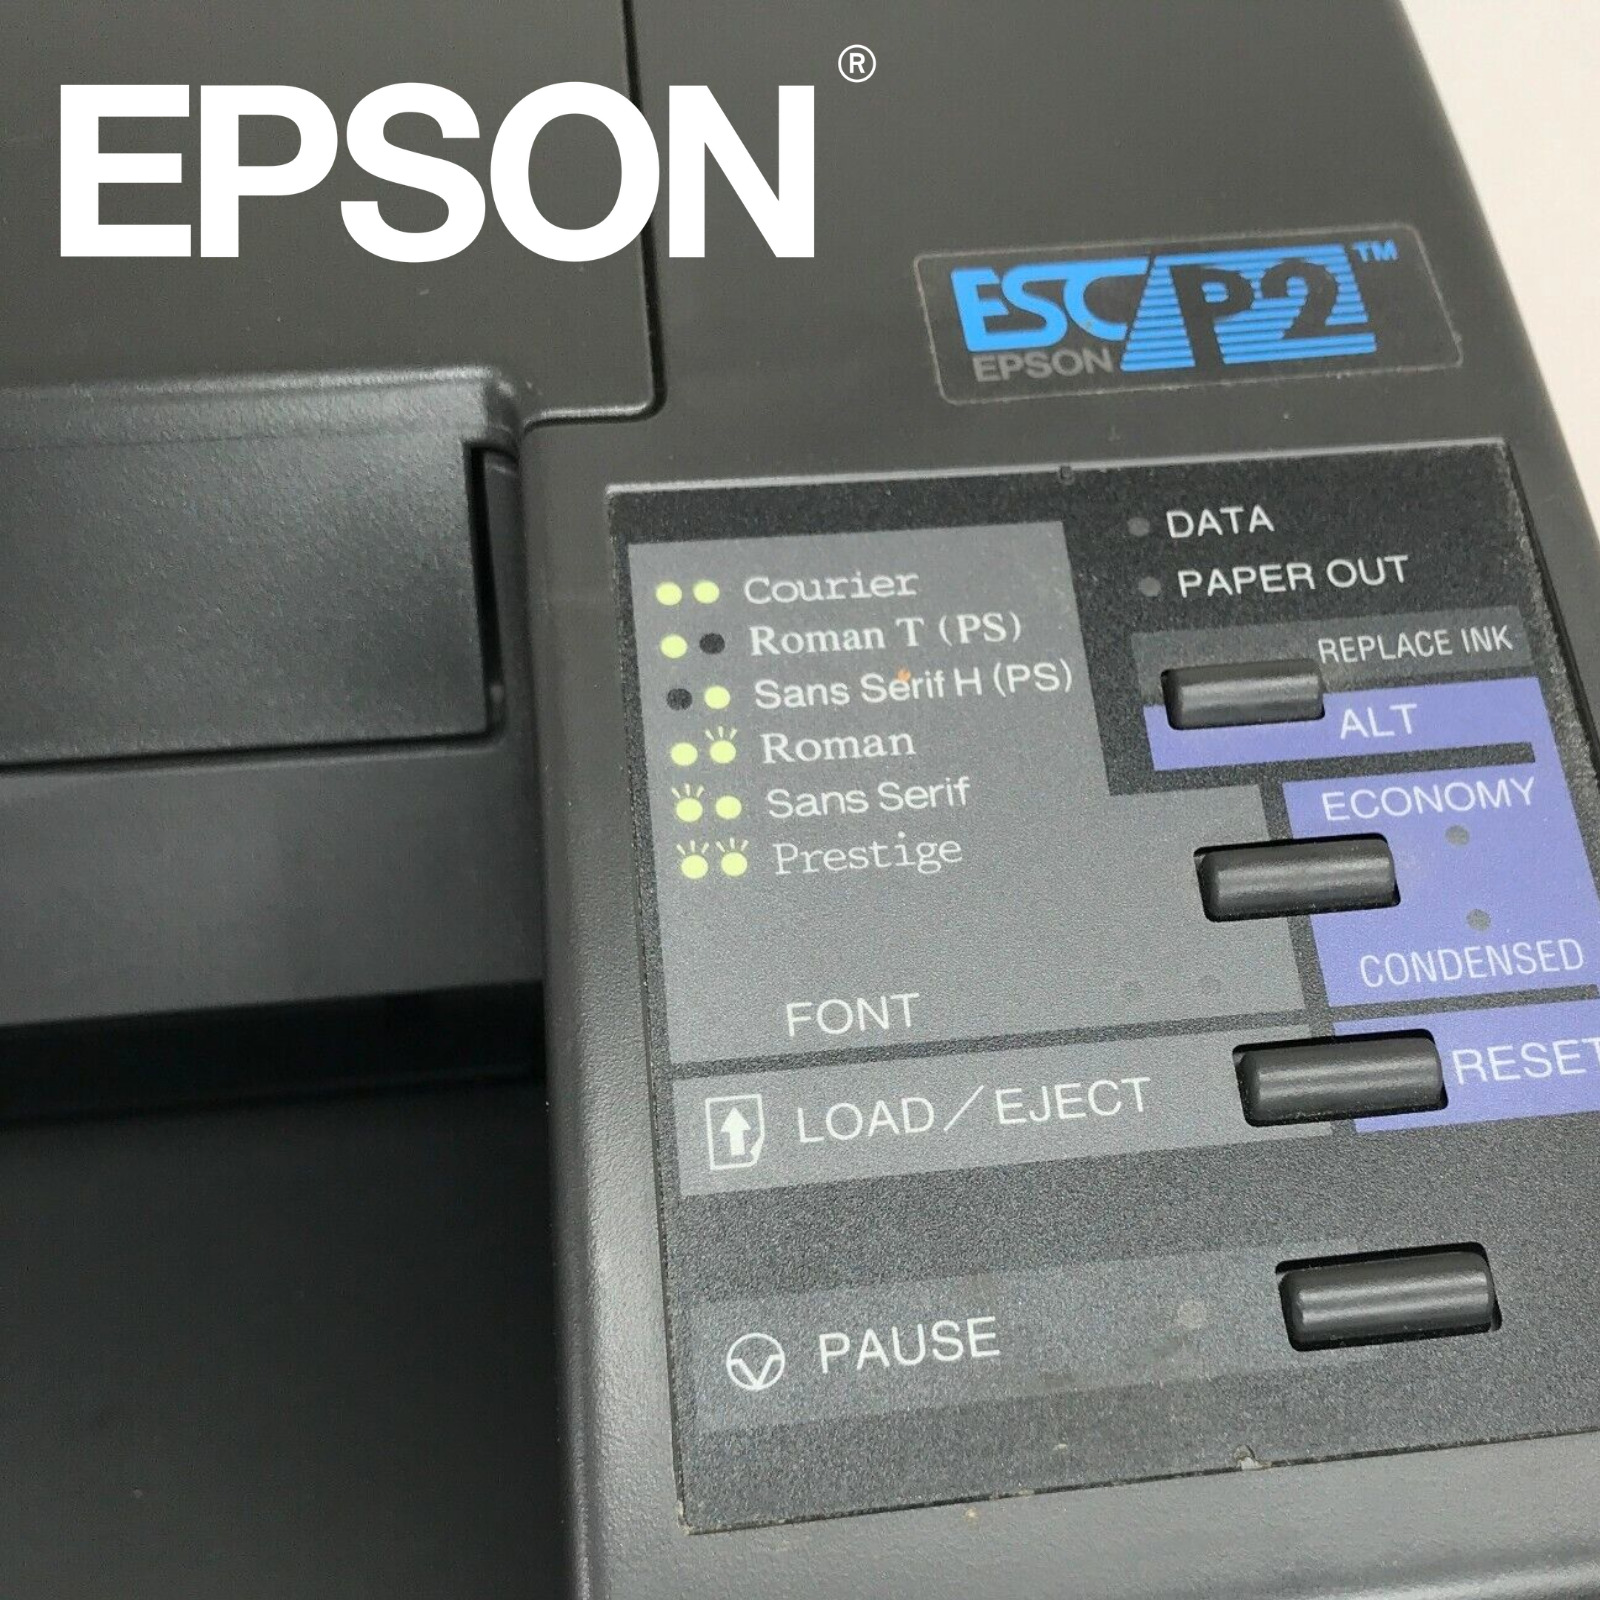 Epson Stylus 300 ESC/P2 Printer - Rare Vintage Parallel Inkjet - AS-IS